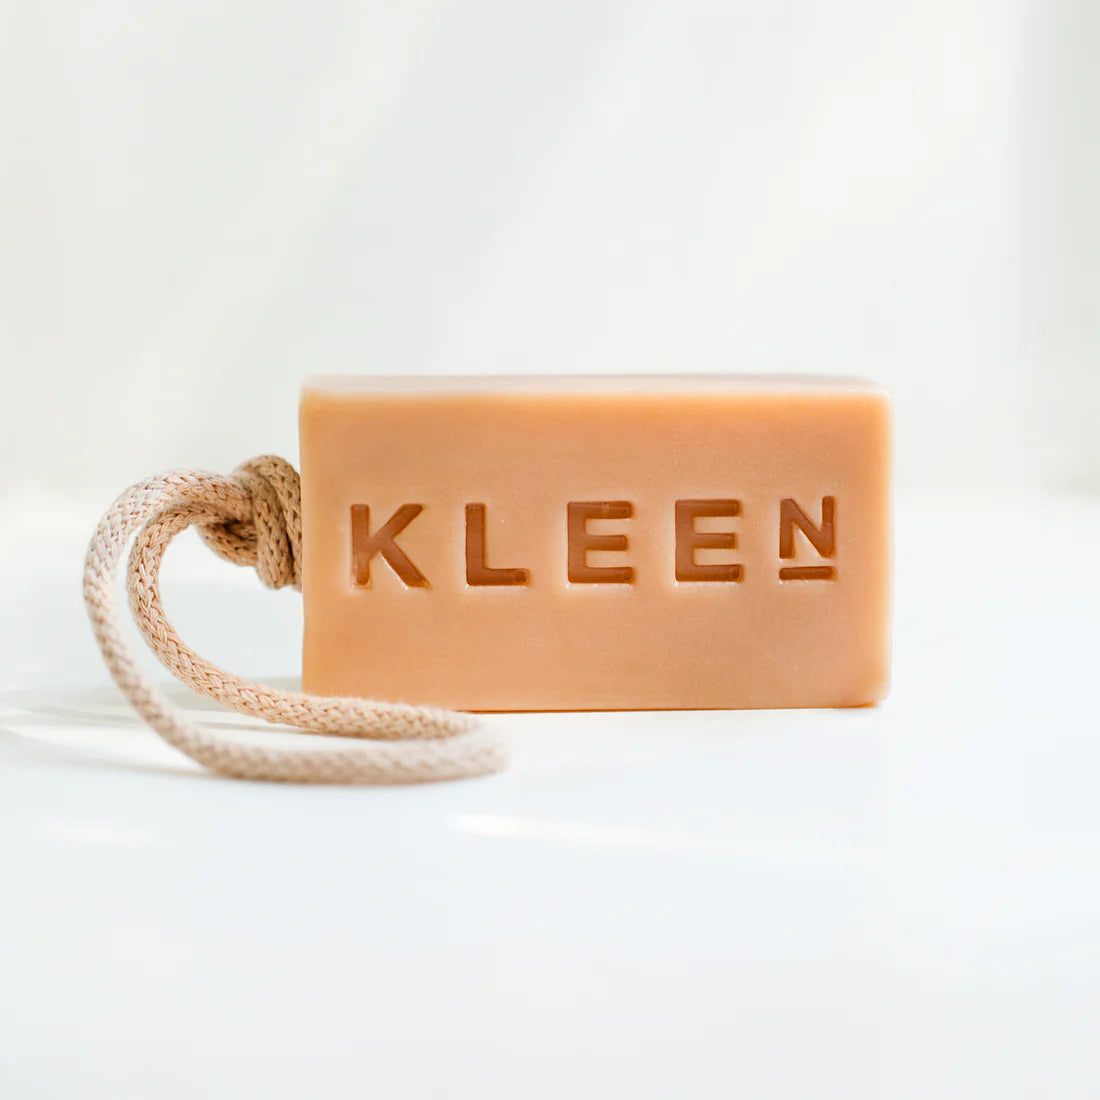 Kleen Soap - Get Lucky